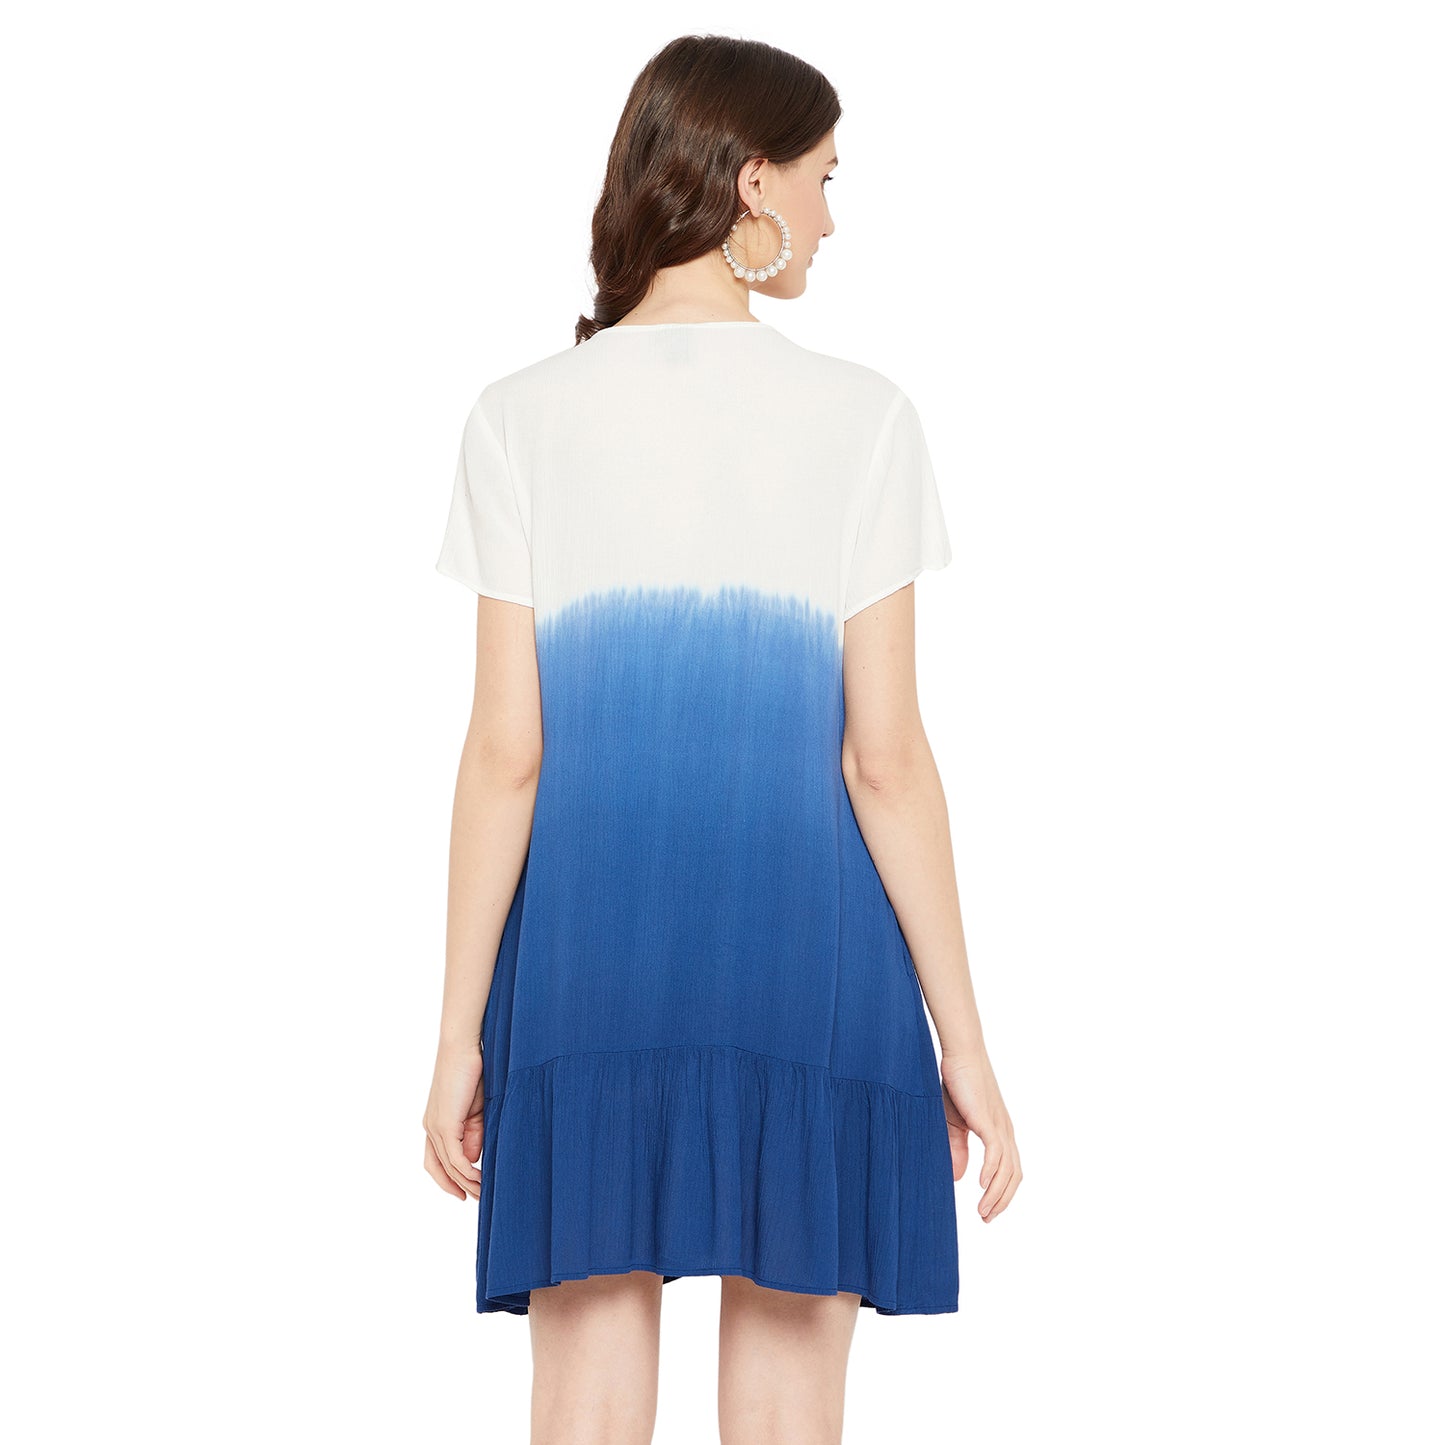 LY2 Summer tie & dye short white & blue dress